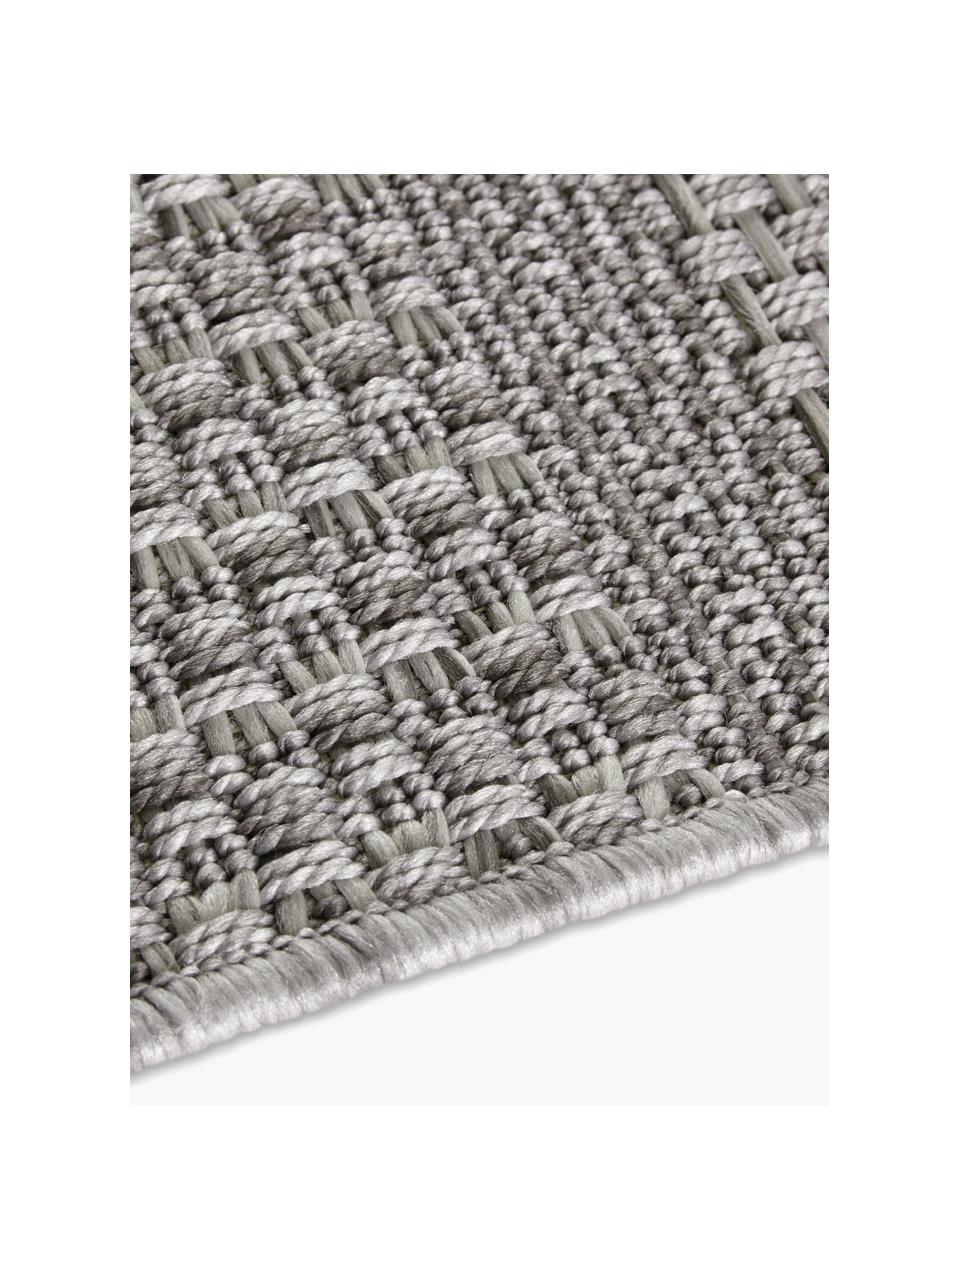 Interiérový/exteriérový koberec Arras, 100 % polypropylen

Materiál použitý v tomto produktu byl testován na škodlivé látky a certifikován podle STANDARD 100 od OEKO-TEX® 1803035, OEKO-TEX Service GmbH., Odstíny šedé, Š 80 cm, D 150 cm (velikost XS)